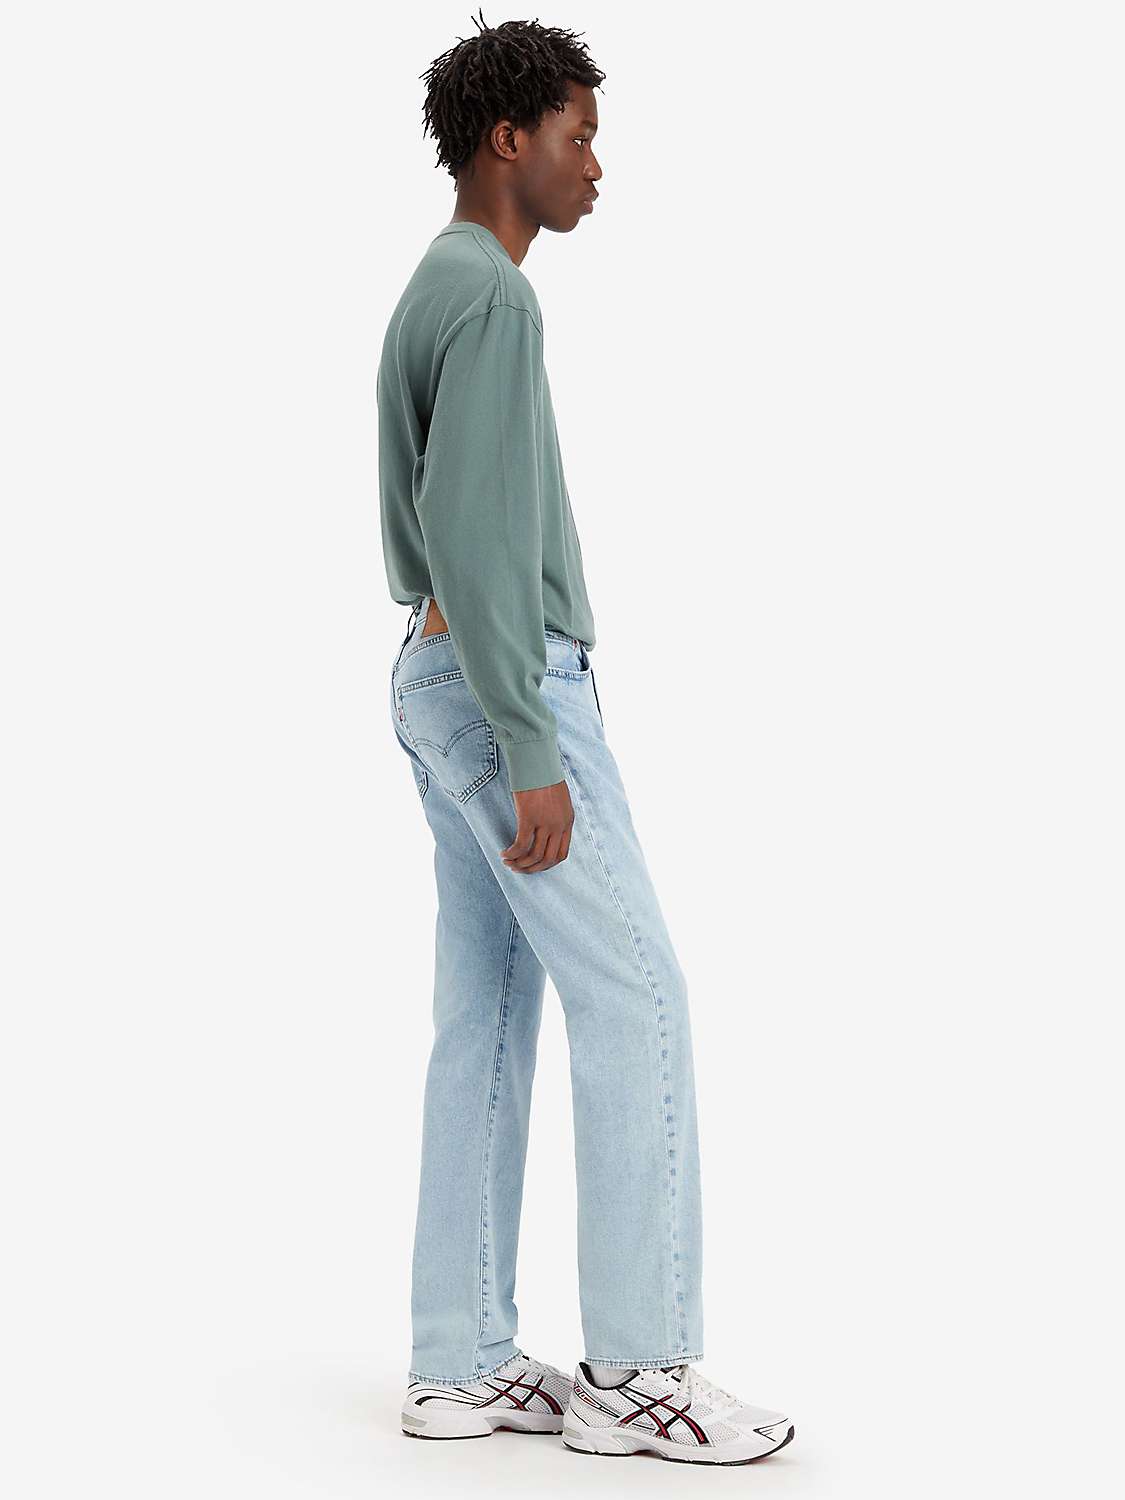 Buy Levi's 502 Regular Tapered Jeans, Blue Online at johnlewis.com